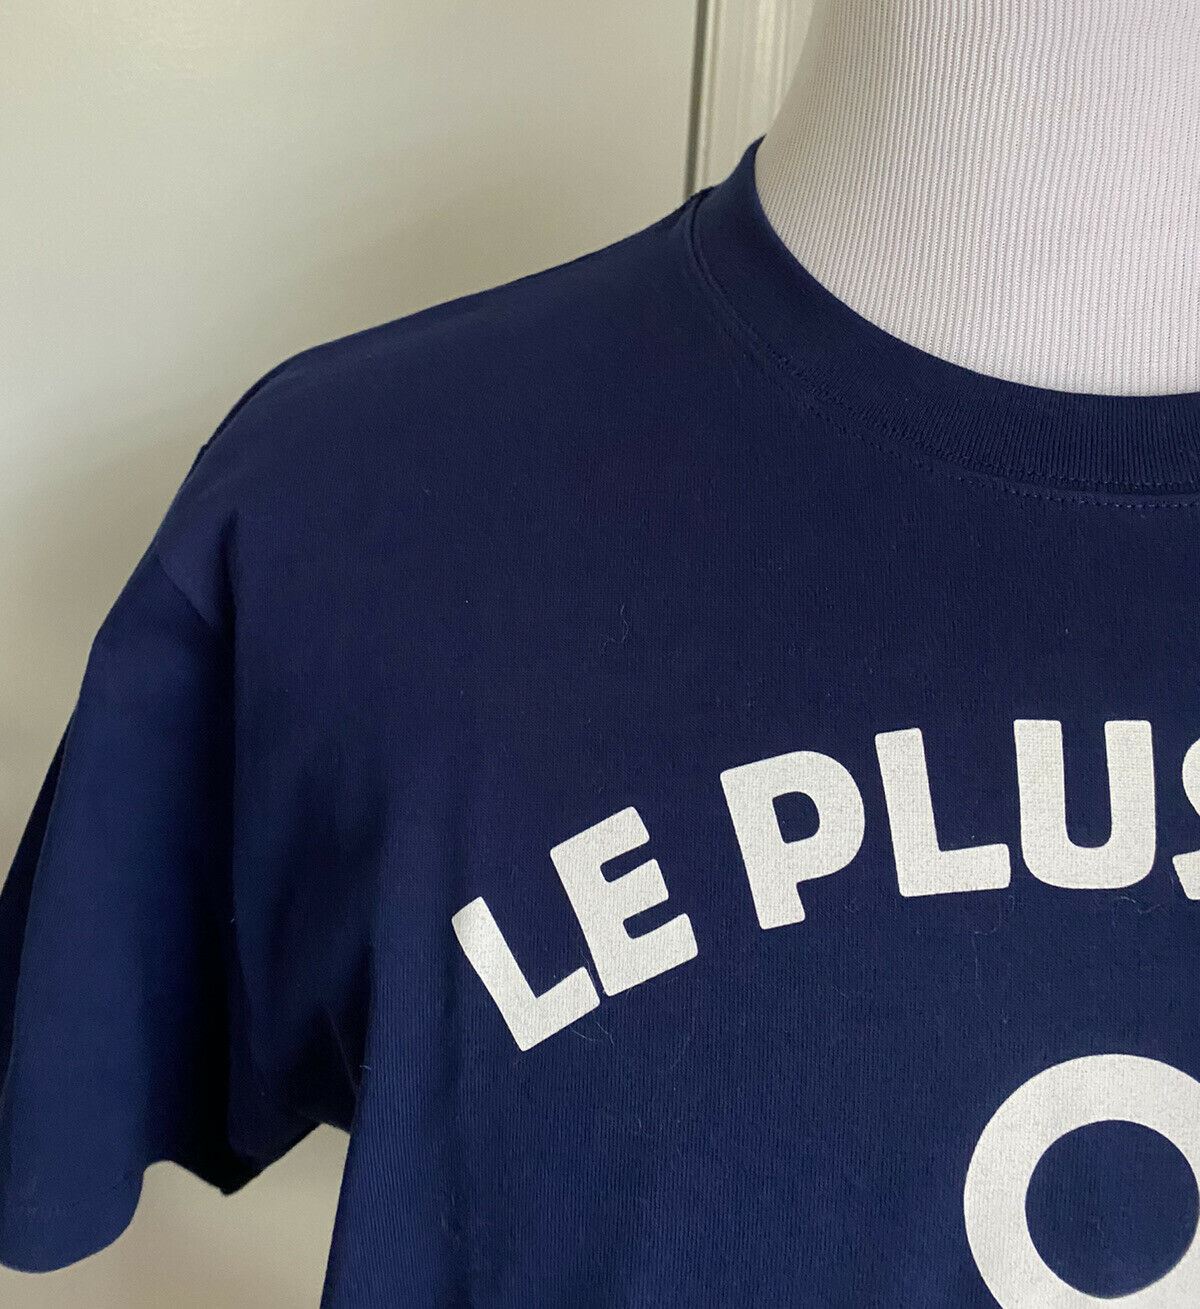 Neues Gucci Herren-Kurzarm-T-Shirt in Blau, Größe M, Italien